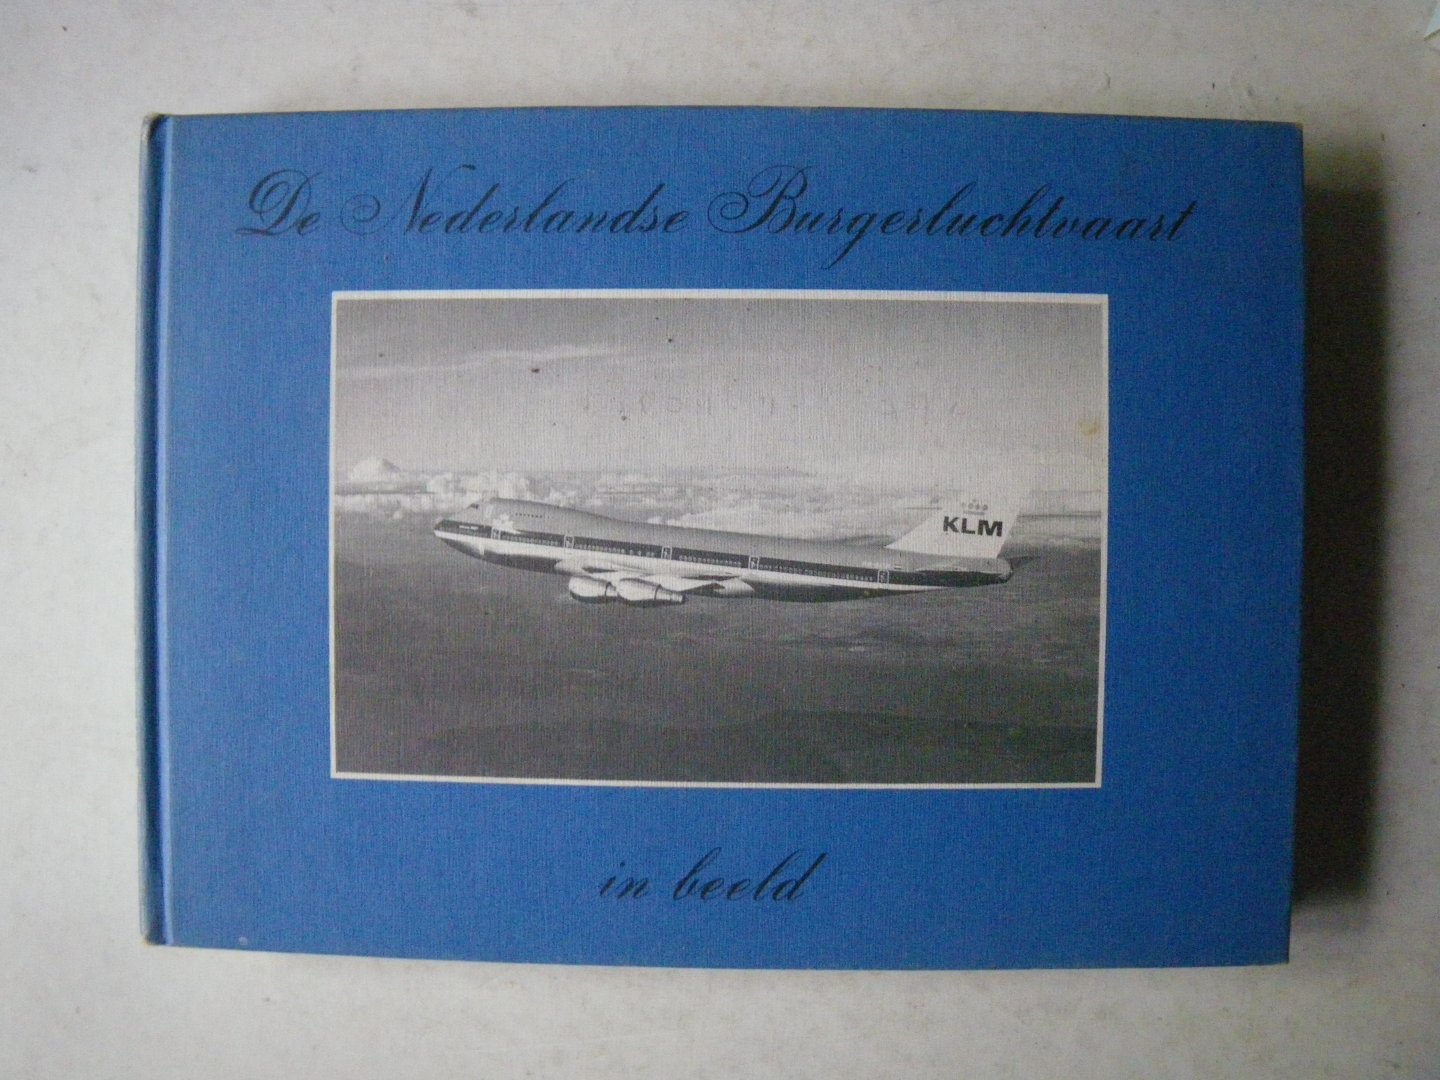 Hooftman, Hugo - De Nederlandse Burgerluchtvaart in Beeld